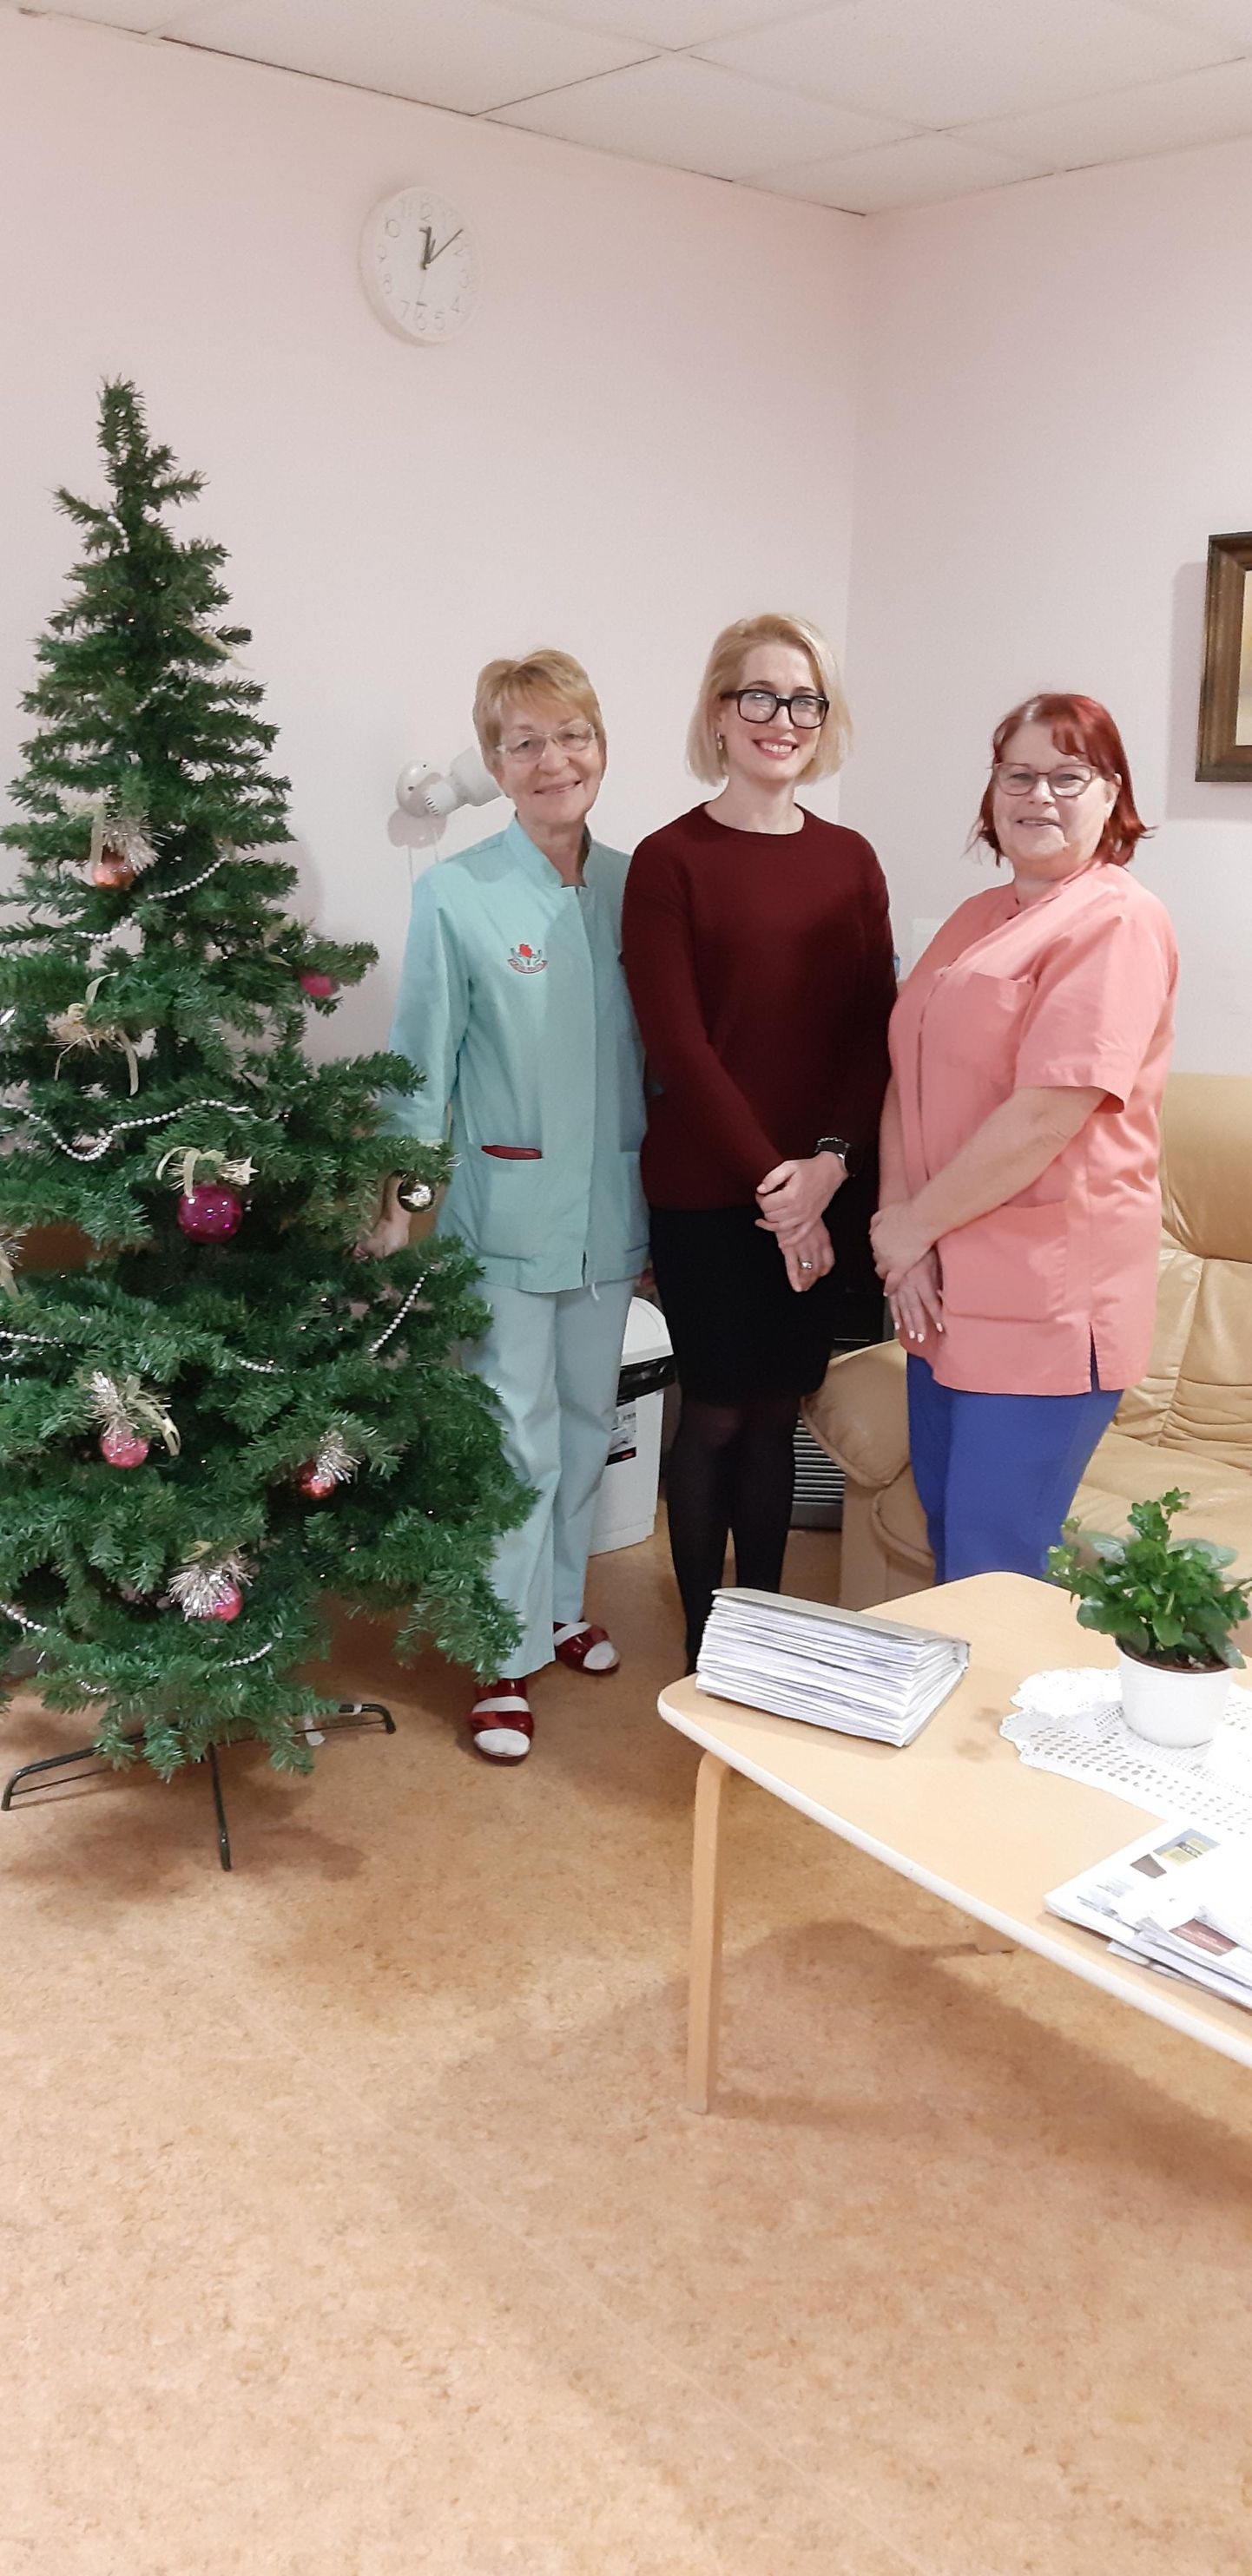 Uues ämmaemanduskeskuses asuvad naisi nõustama Maie Zirk (vasakult), ämmaemandusjuht Egle Lihtsa ja Marika Karon.